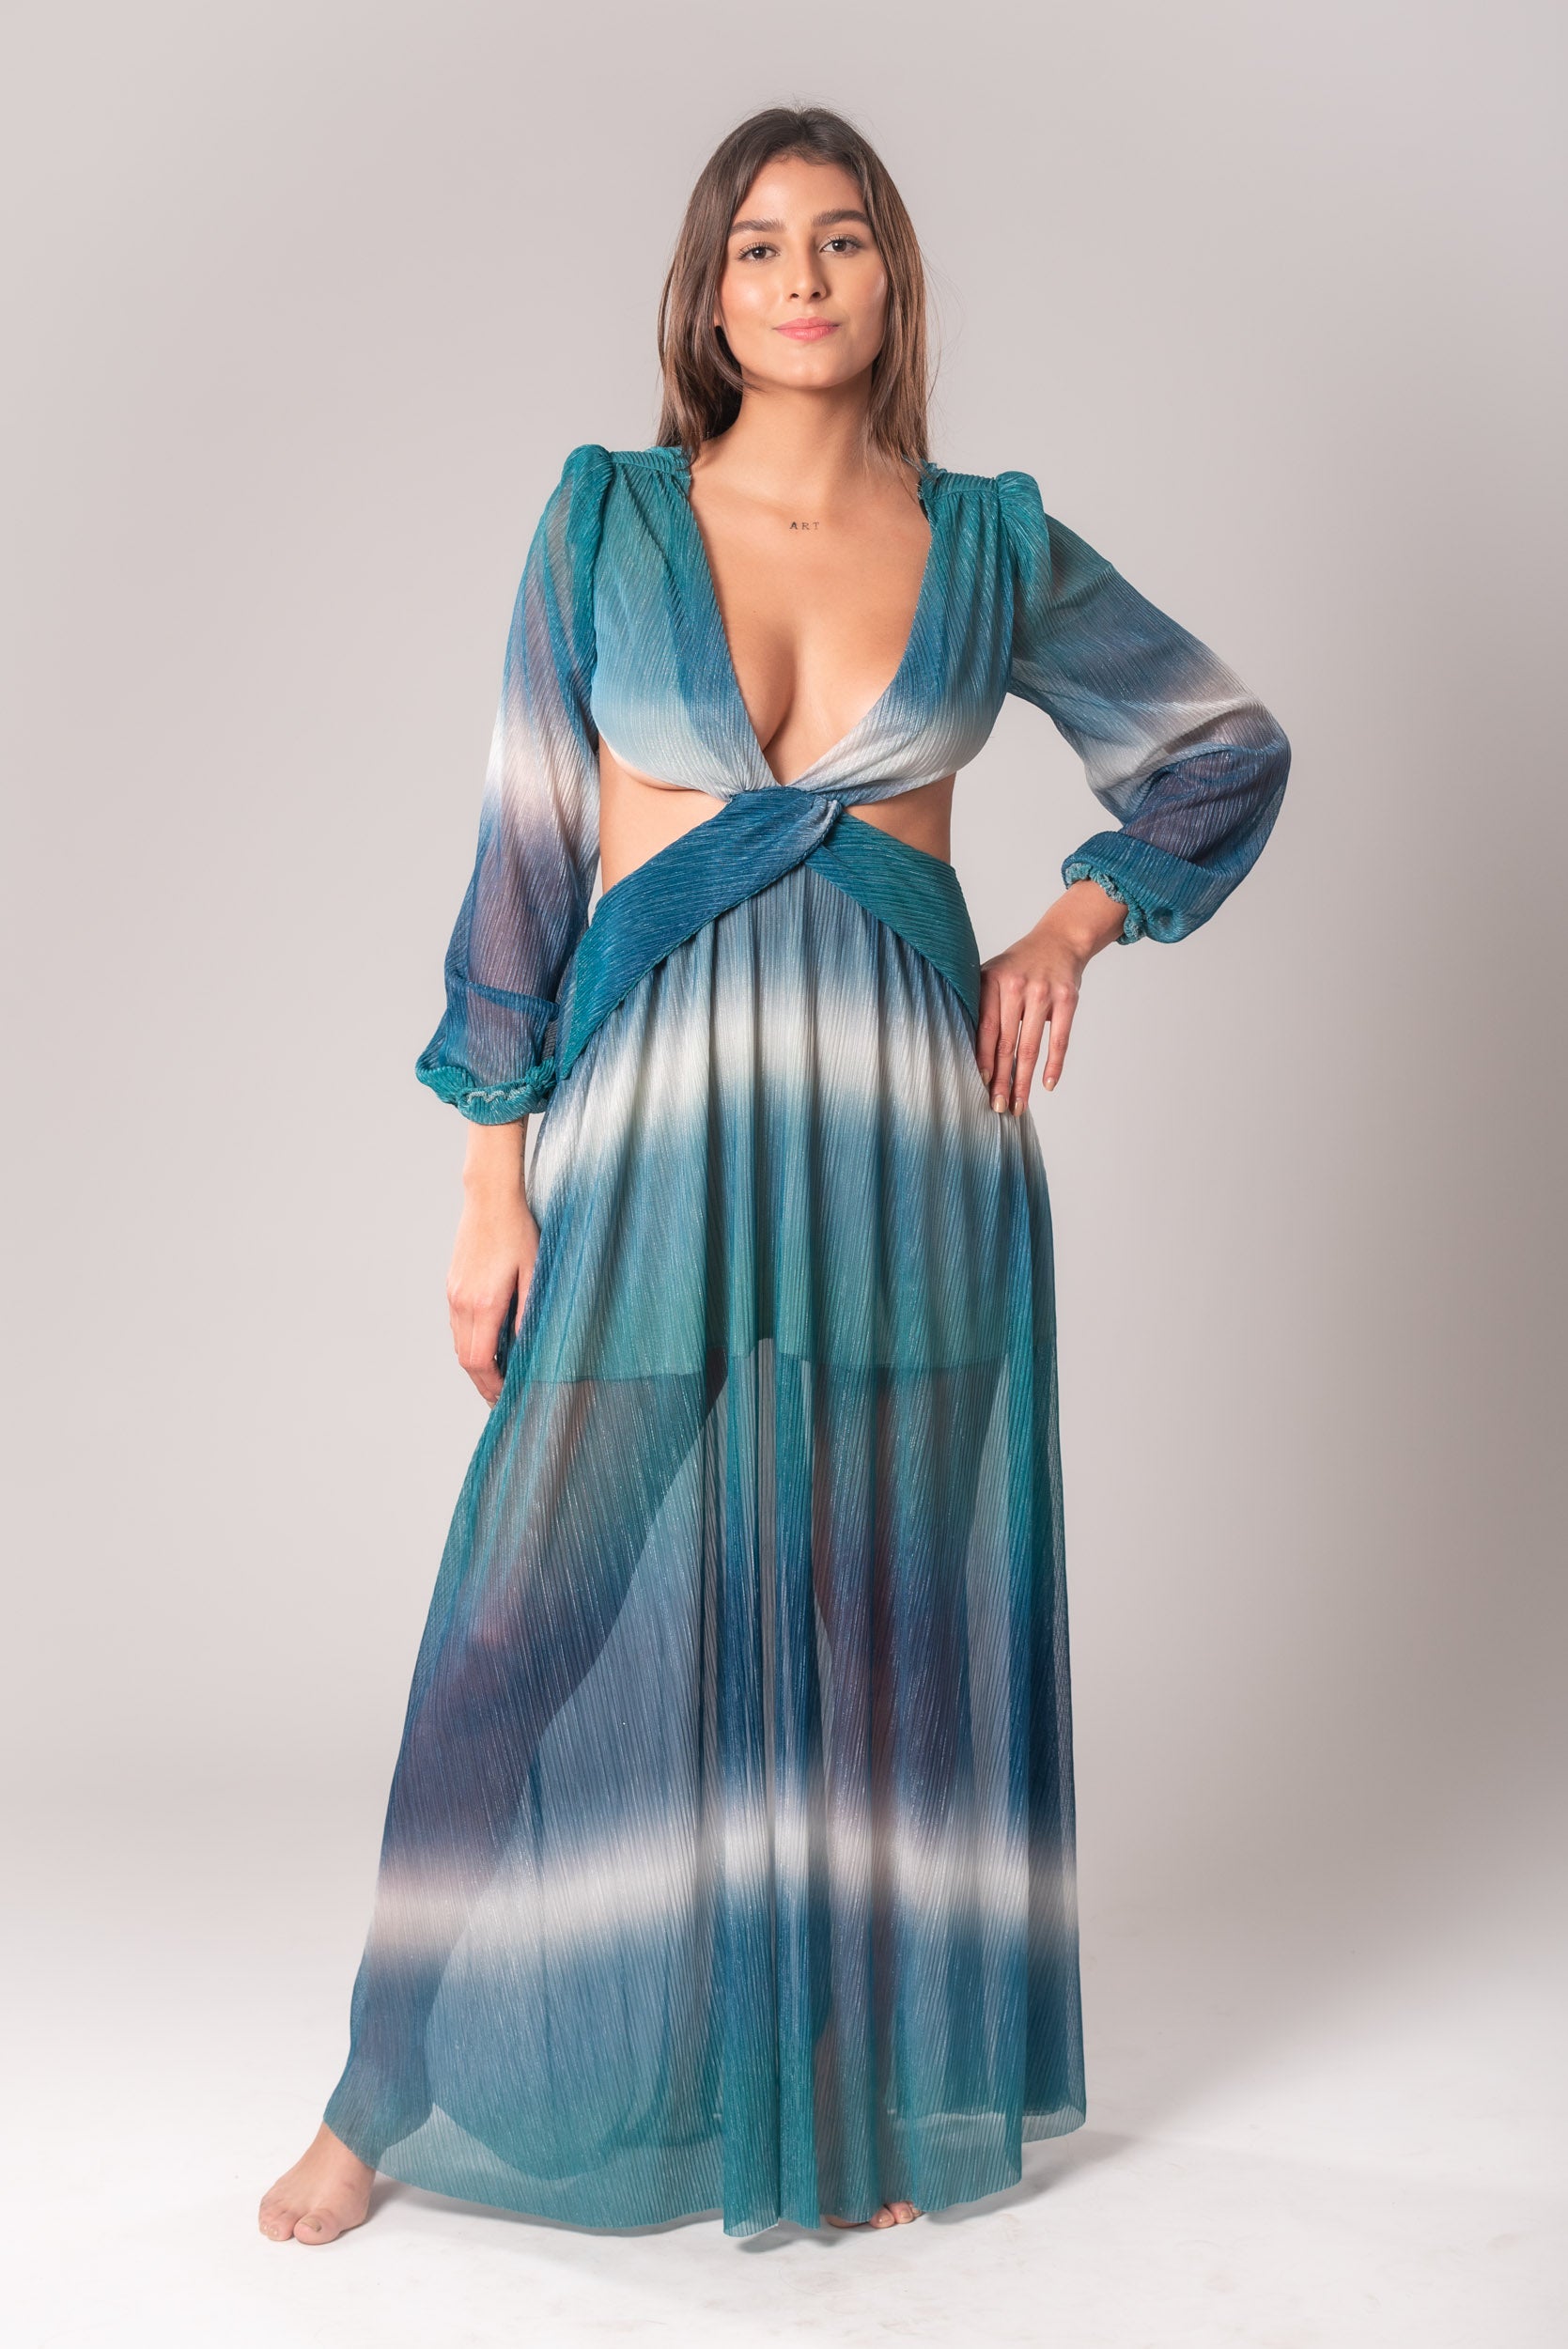 Olas Blue Long Beautiful Elegant Dress